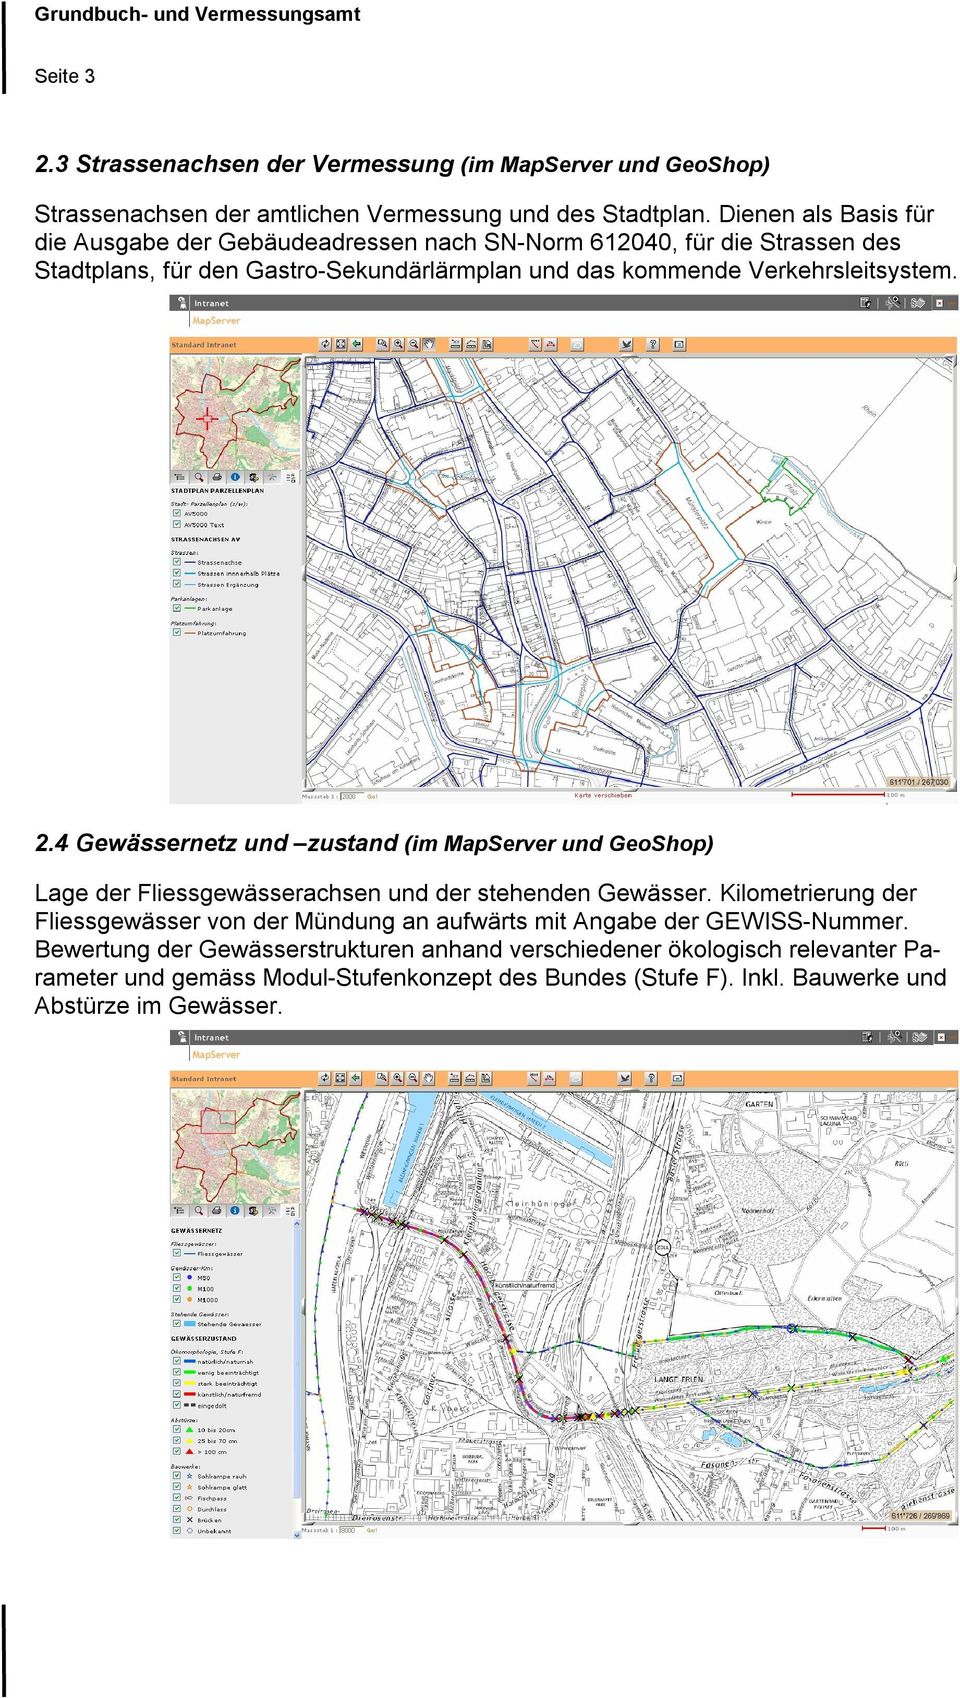 Verkehrsleitsystem. 2.4 Gewässernetz und zustand (im MapServer und GeoShop) Lage der Fliessgewässerachsen und der stehenden Gewässer.